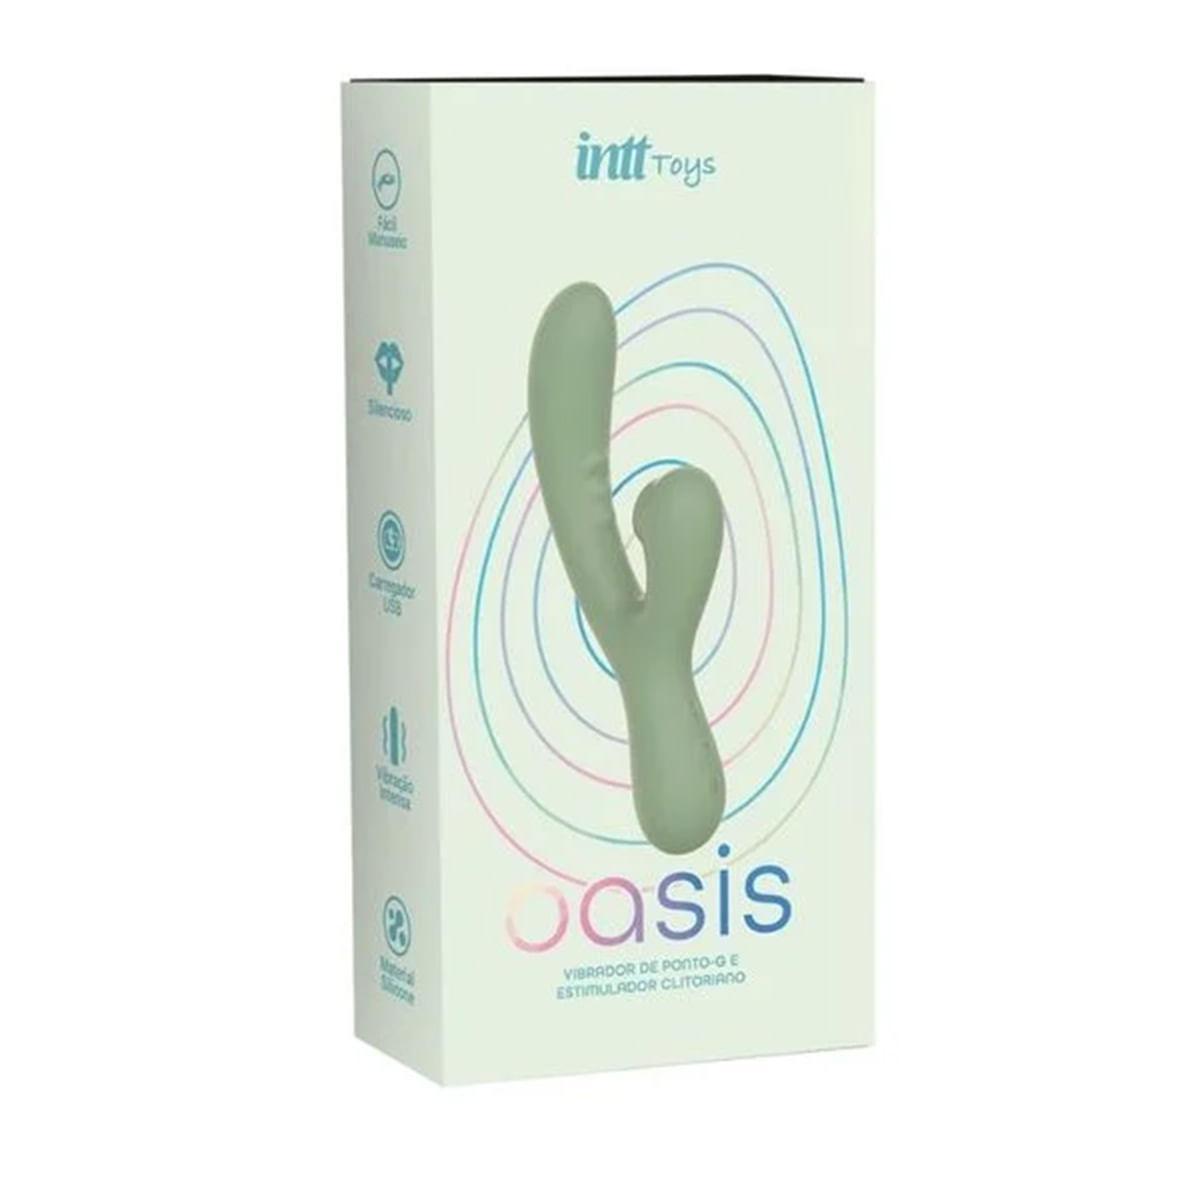 Oasis Vibrador Ponto G com Estimulador Clitoriano e 10 Modos de Vibração Linha Wellness Intt